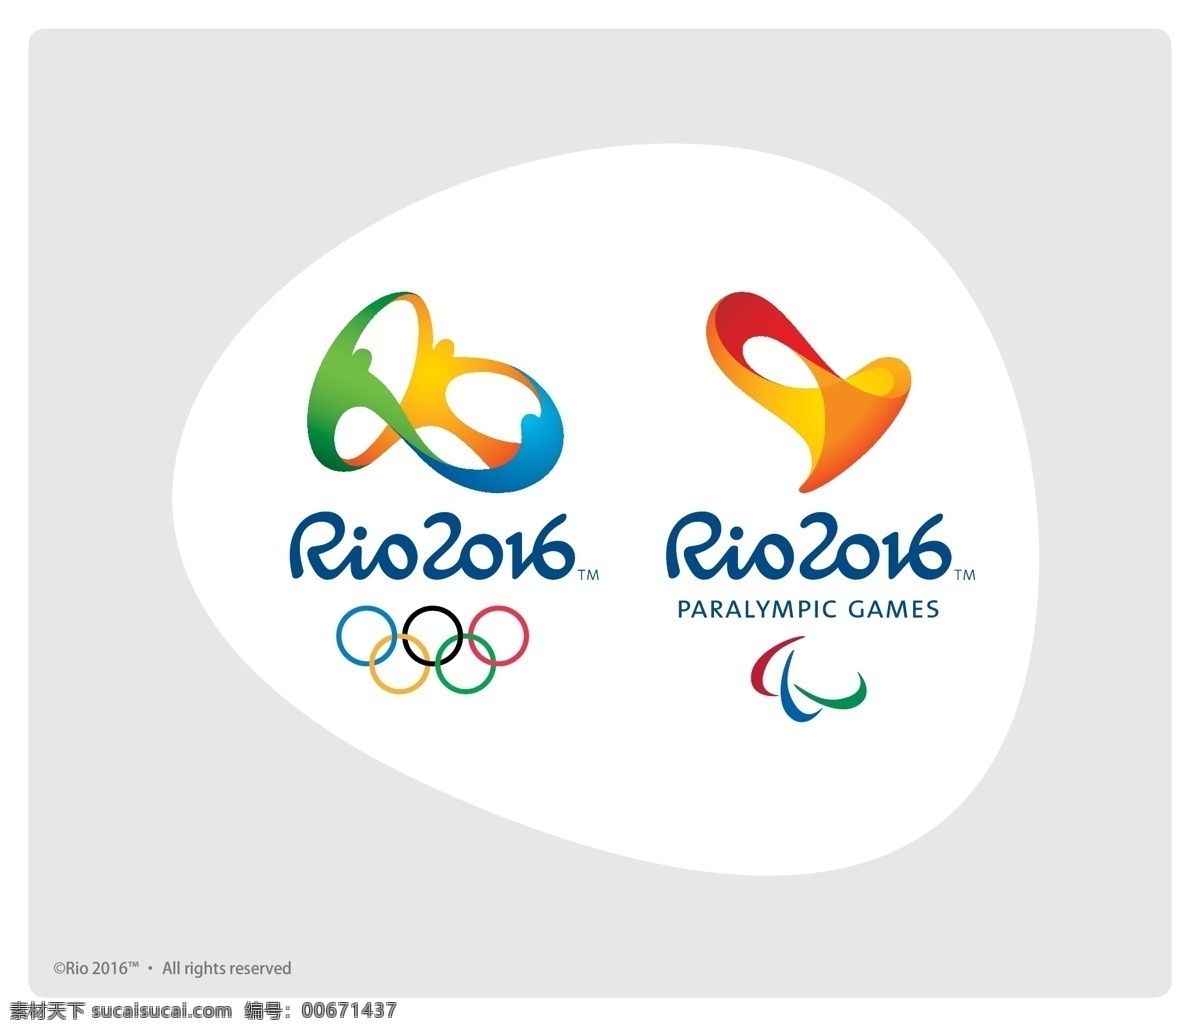 里约奥运会 rio 2016 emblem 里约热内卢 奥运会 残奥会 会徽 里约 标志图标 公共标识标志